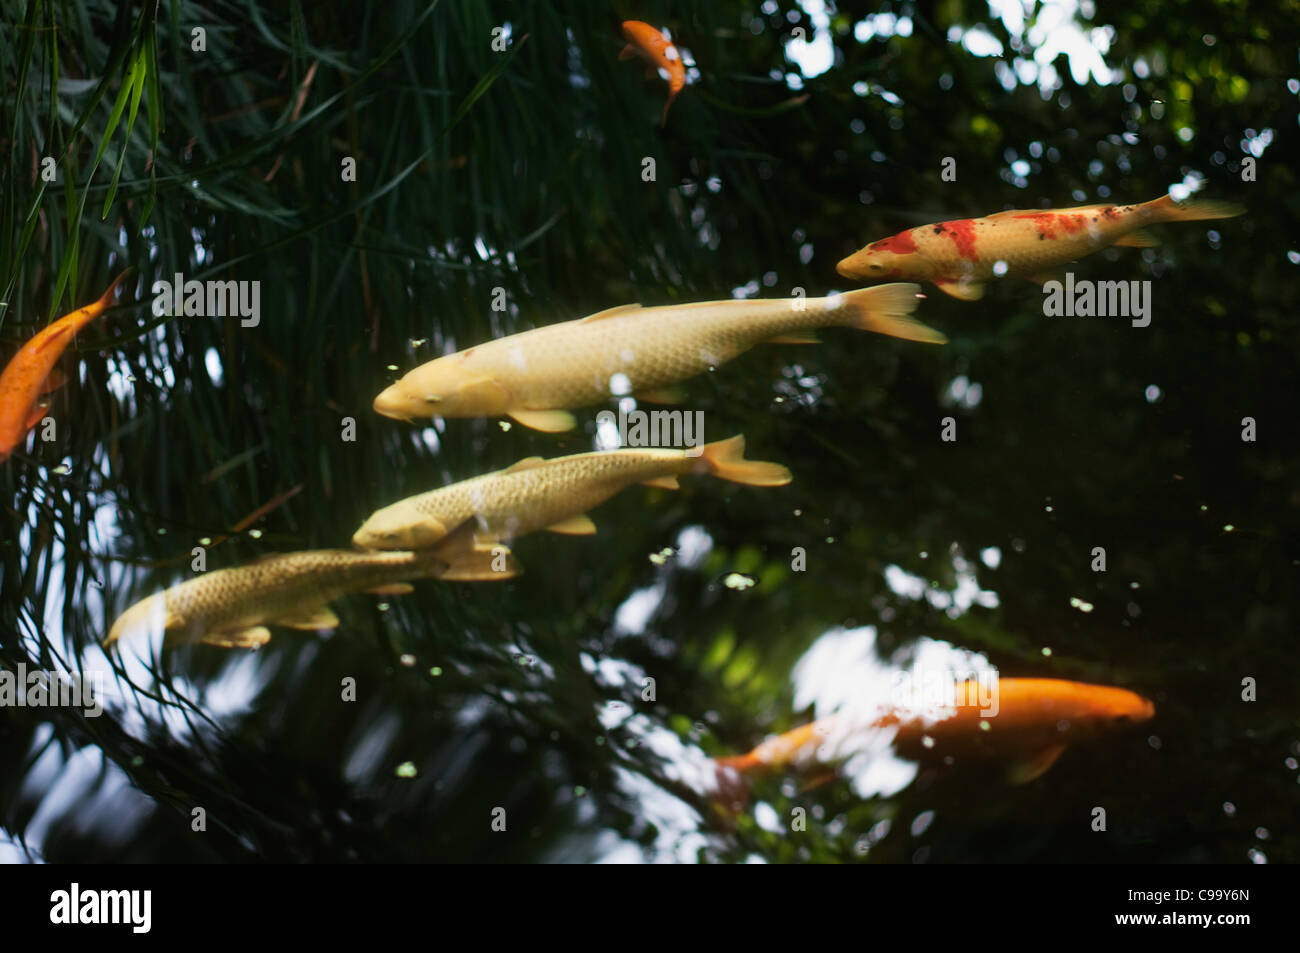 Allemagne, Hesse, Francfort, Cyprinus carpio poissons dans le lac de jardin Banque D'Images